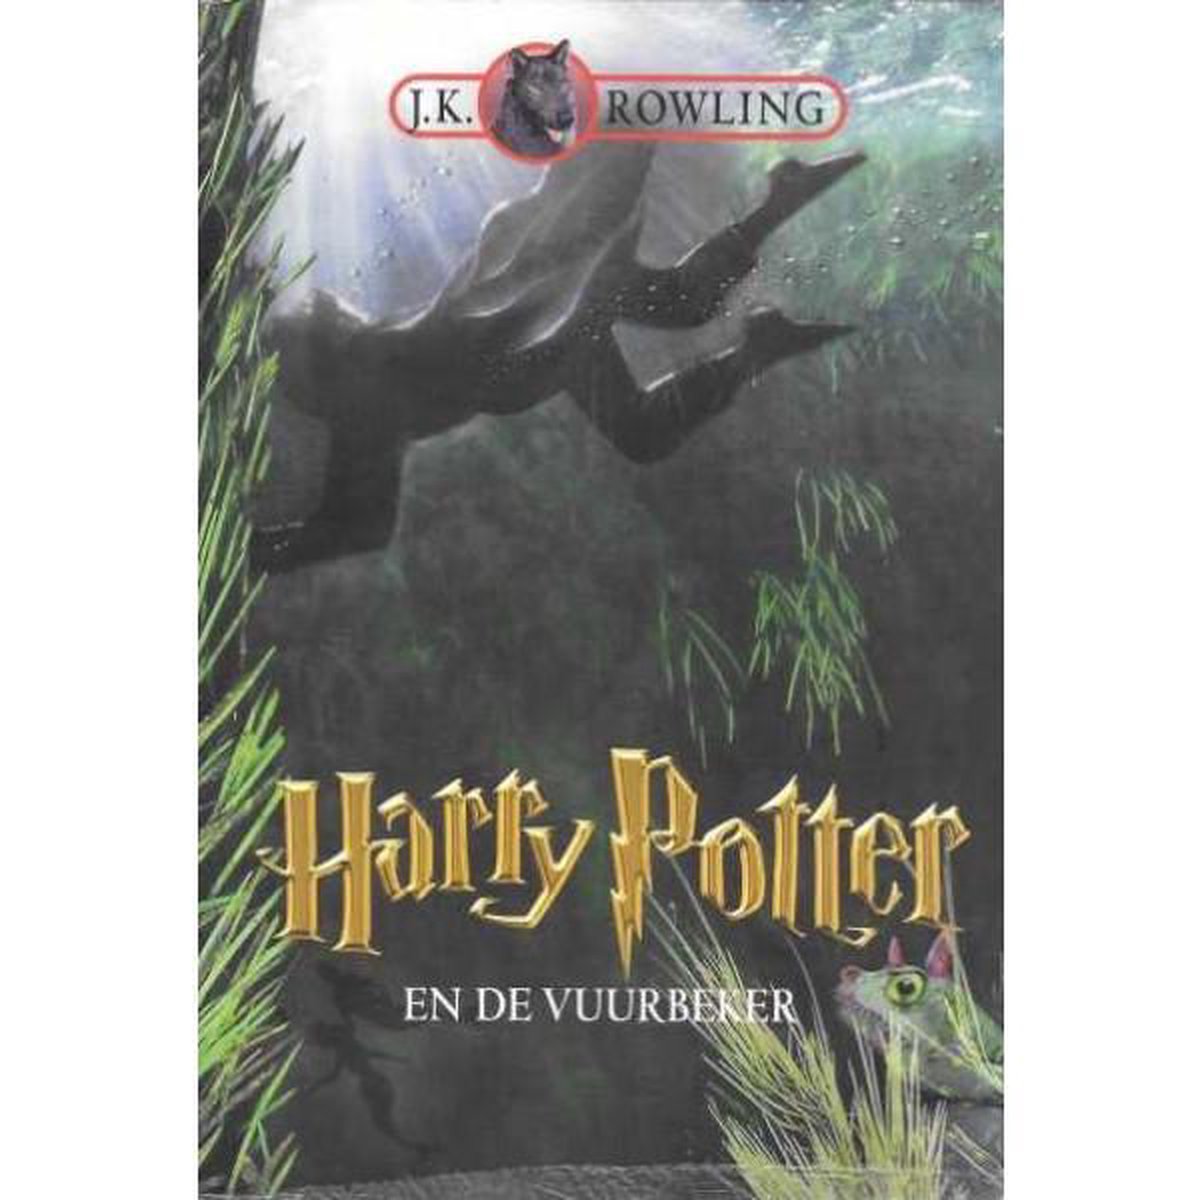 Harry Potter 4 - Harry Potter en de vuurbeker - J.K. Rowling